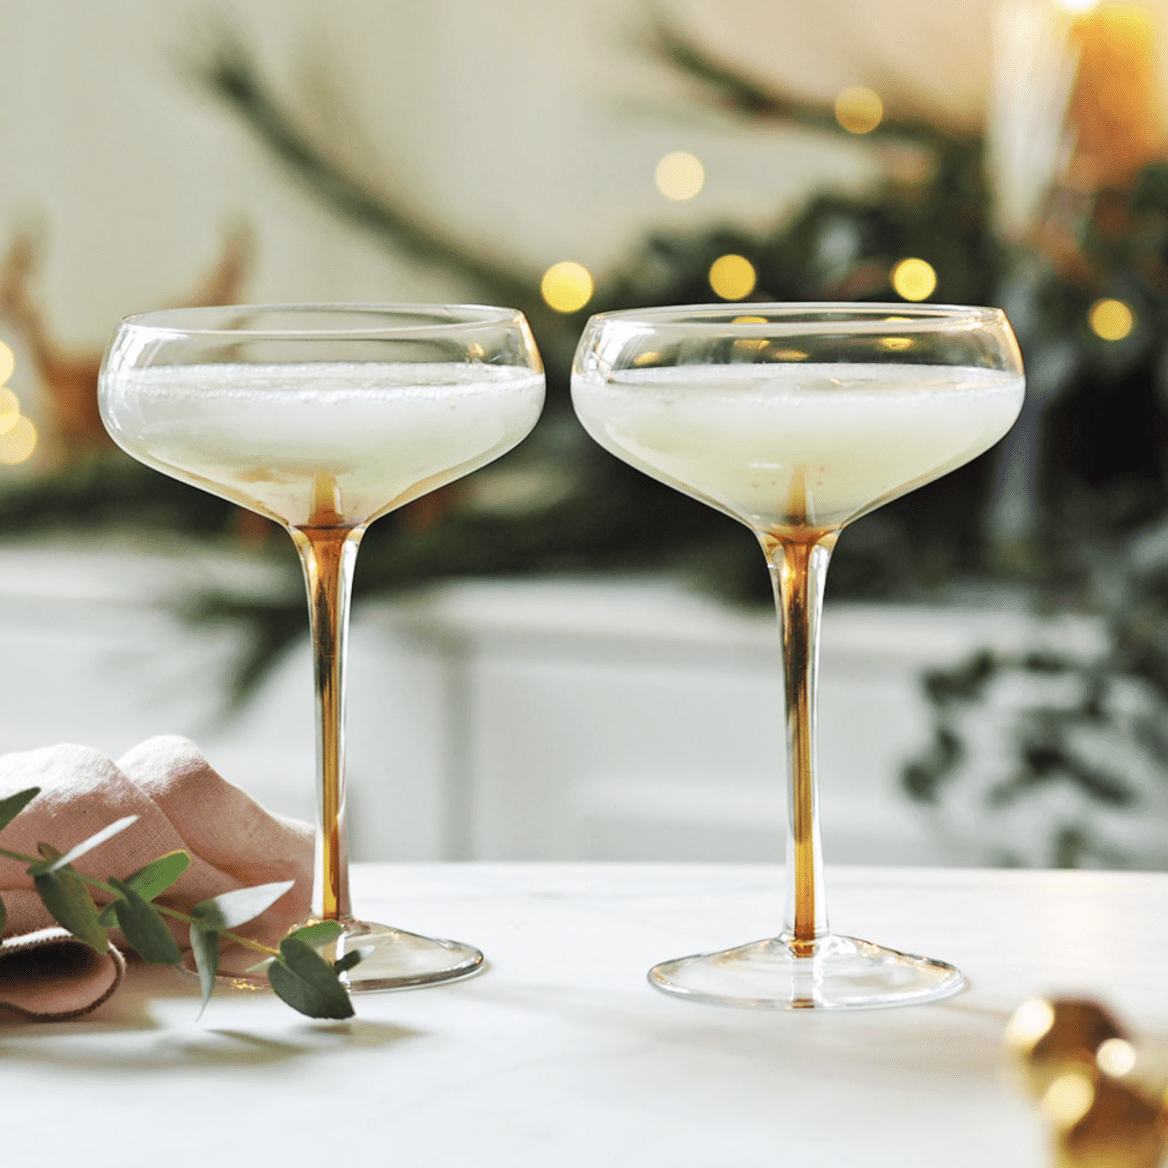 2 filled amber stemmed cocktail glasses on a kitchen top.